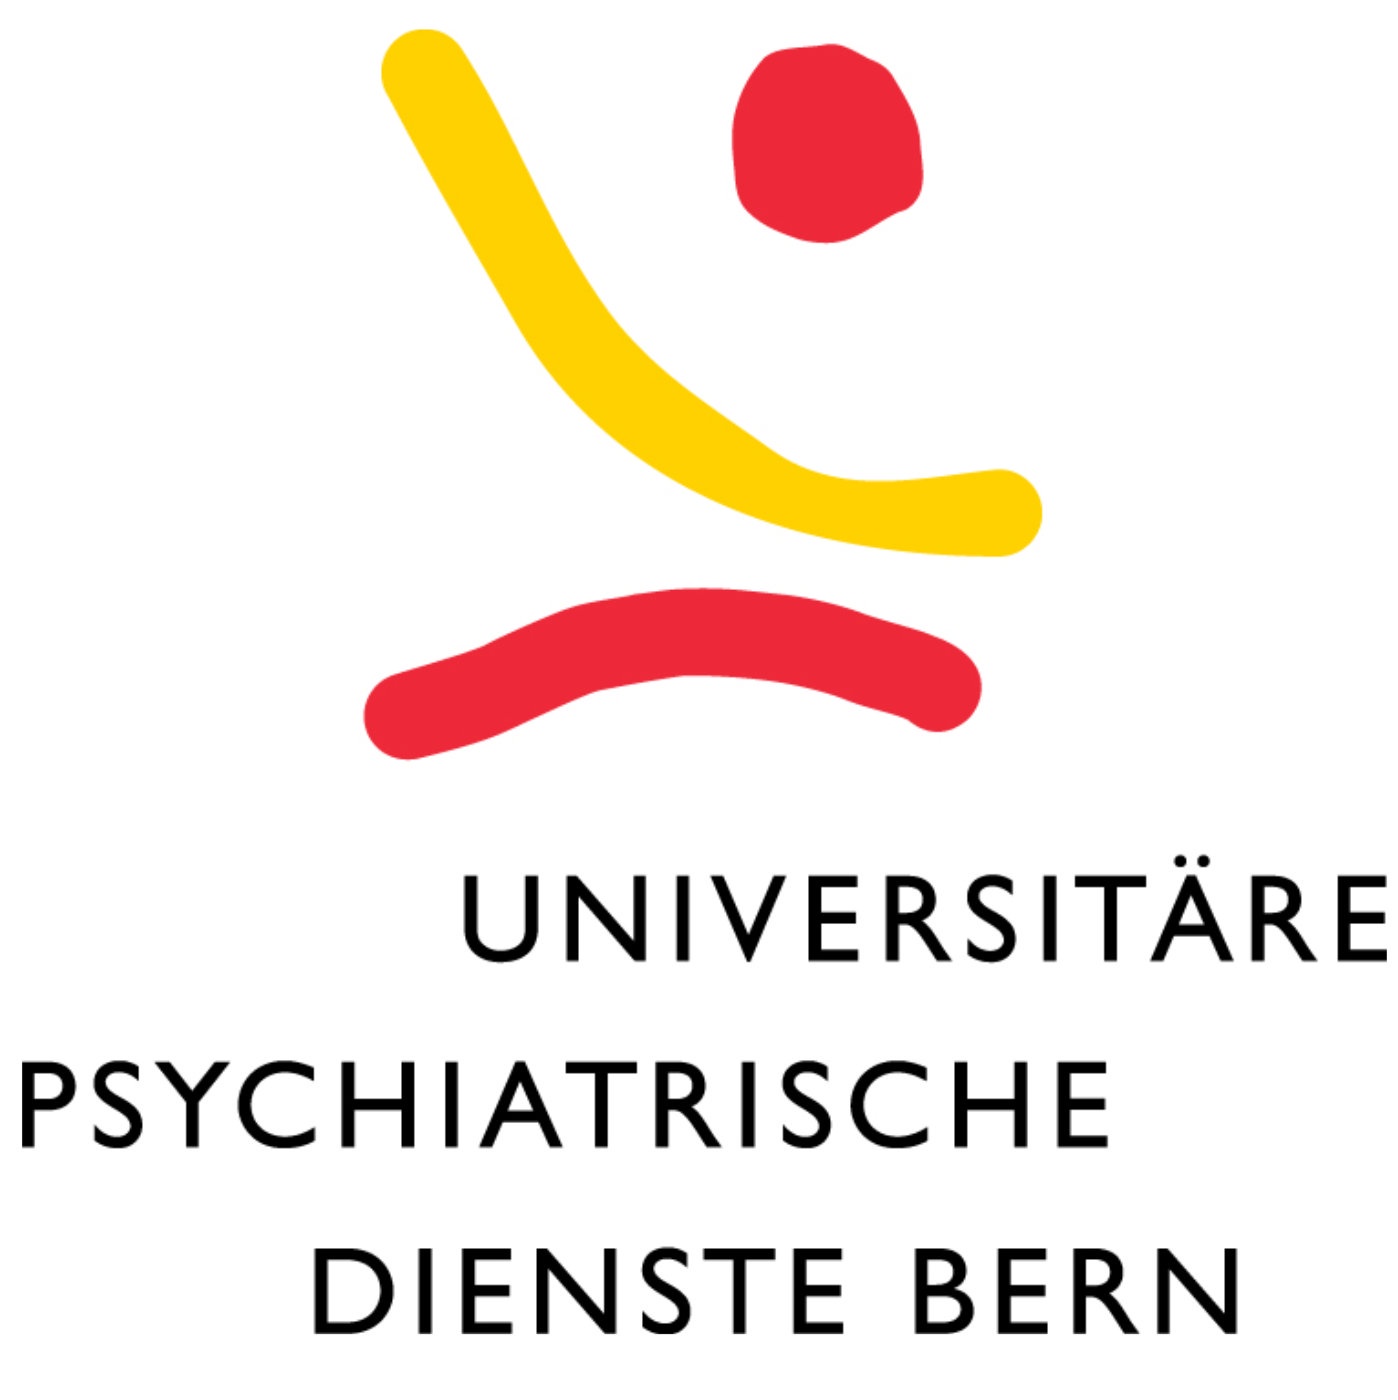 Dein Job bei den Universitären Psychiatrischen Diensten Bern (UPD)